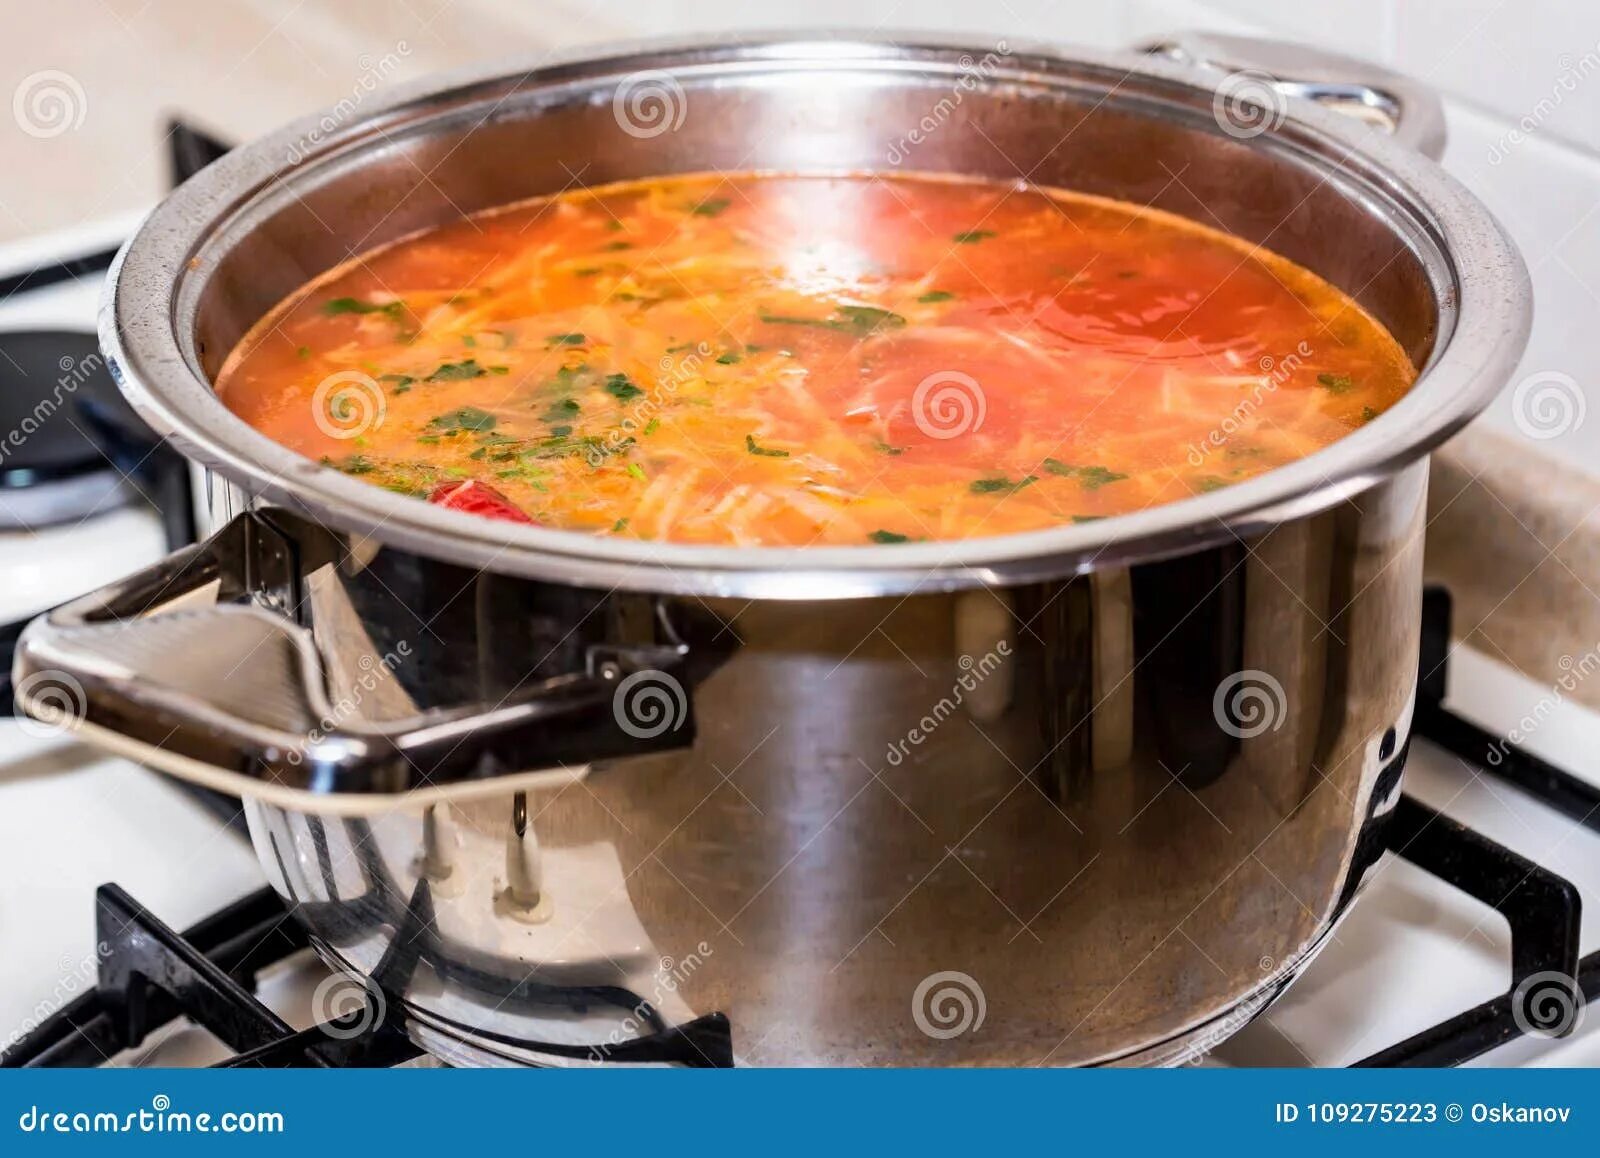 Кастрюля для супа сколько литров. Суп в кастрюле. Суп в маленькой кастрюле. Исландская кастрюля с супом. Суп в кастрюле сбоку.